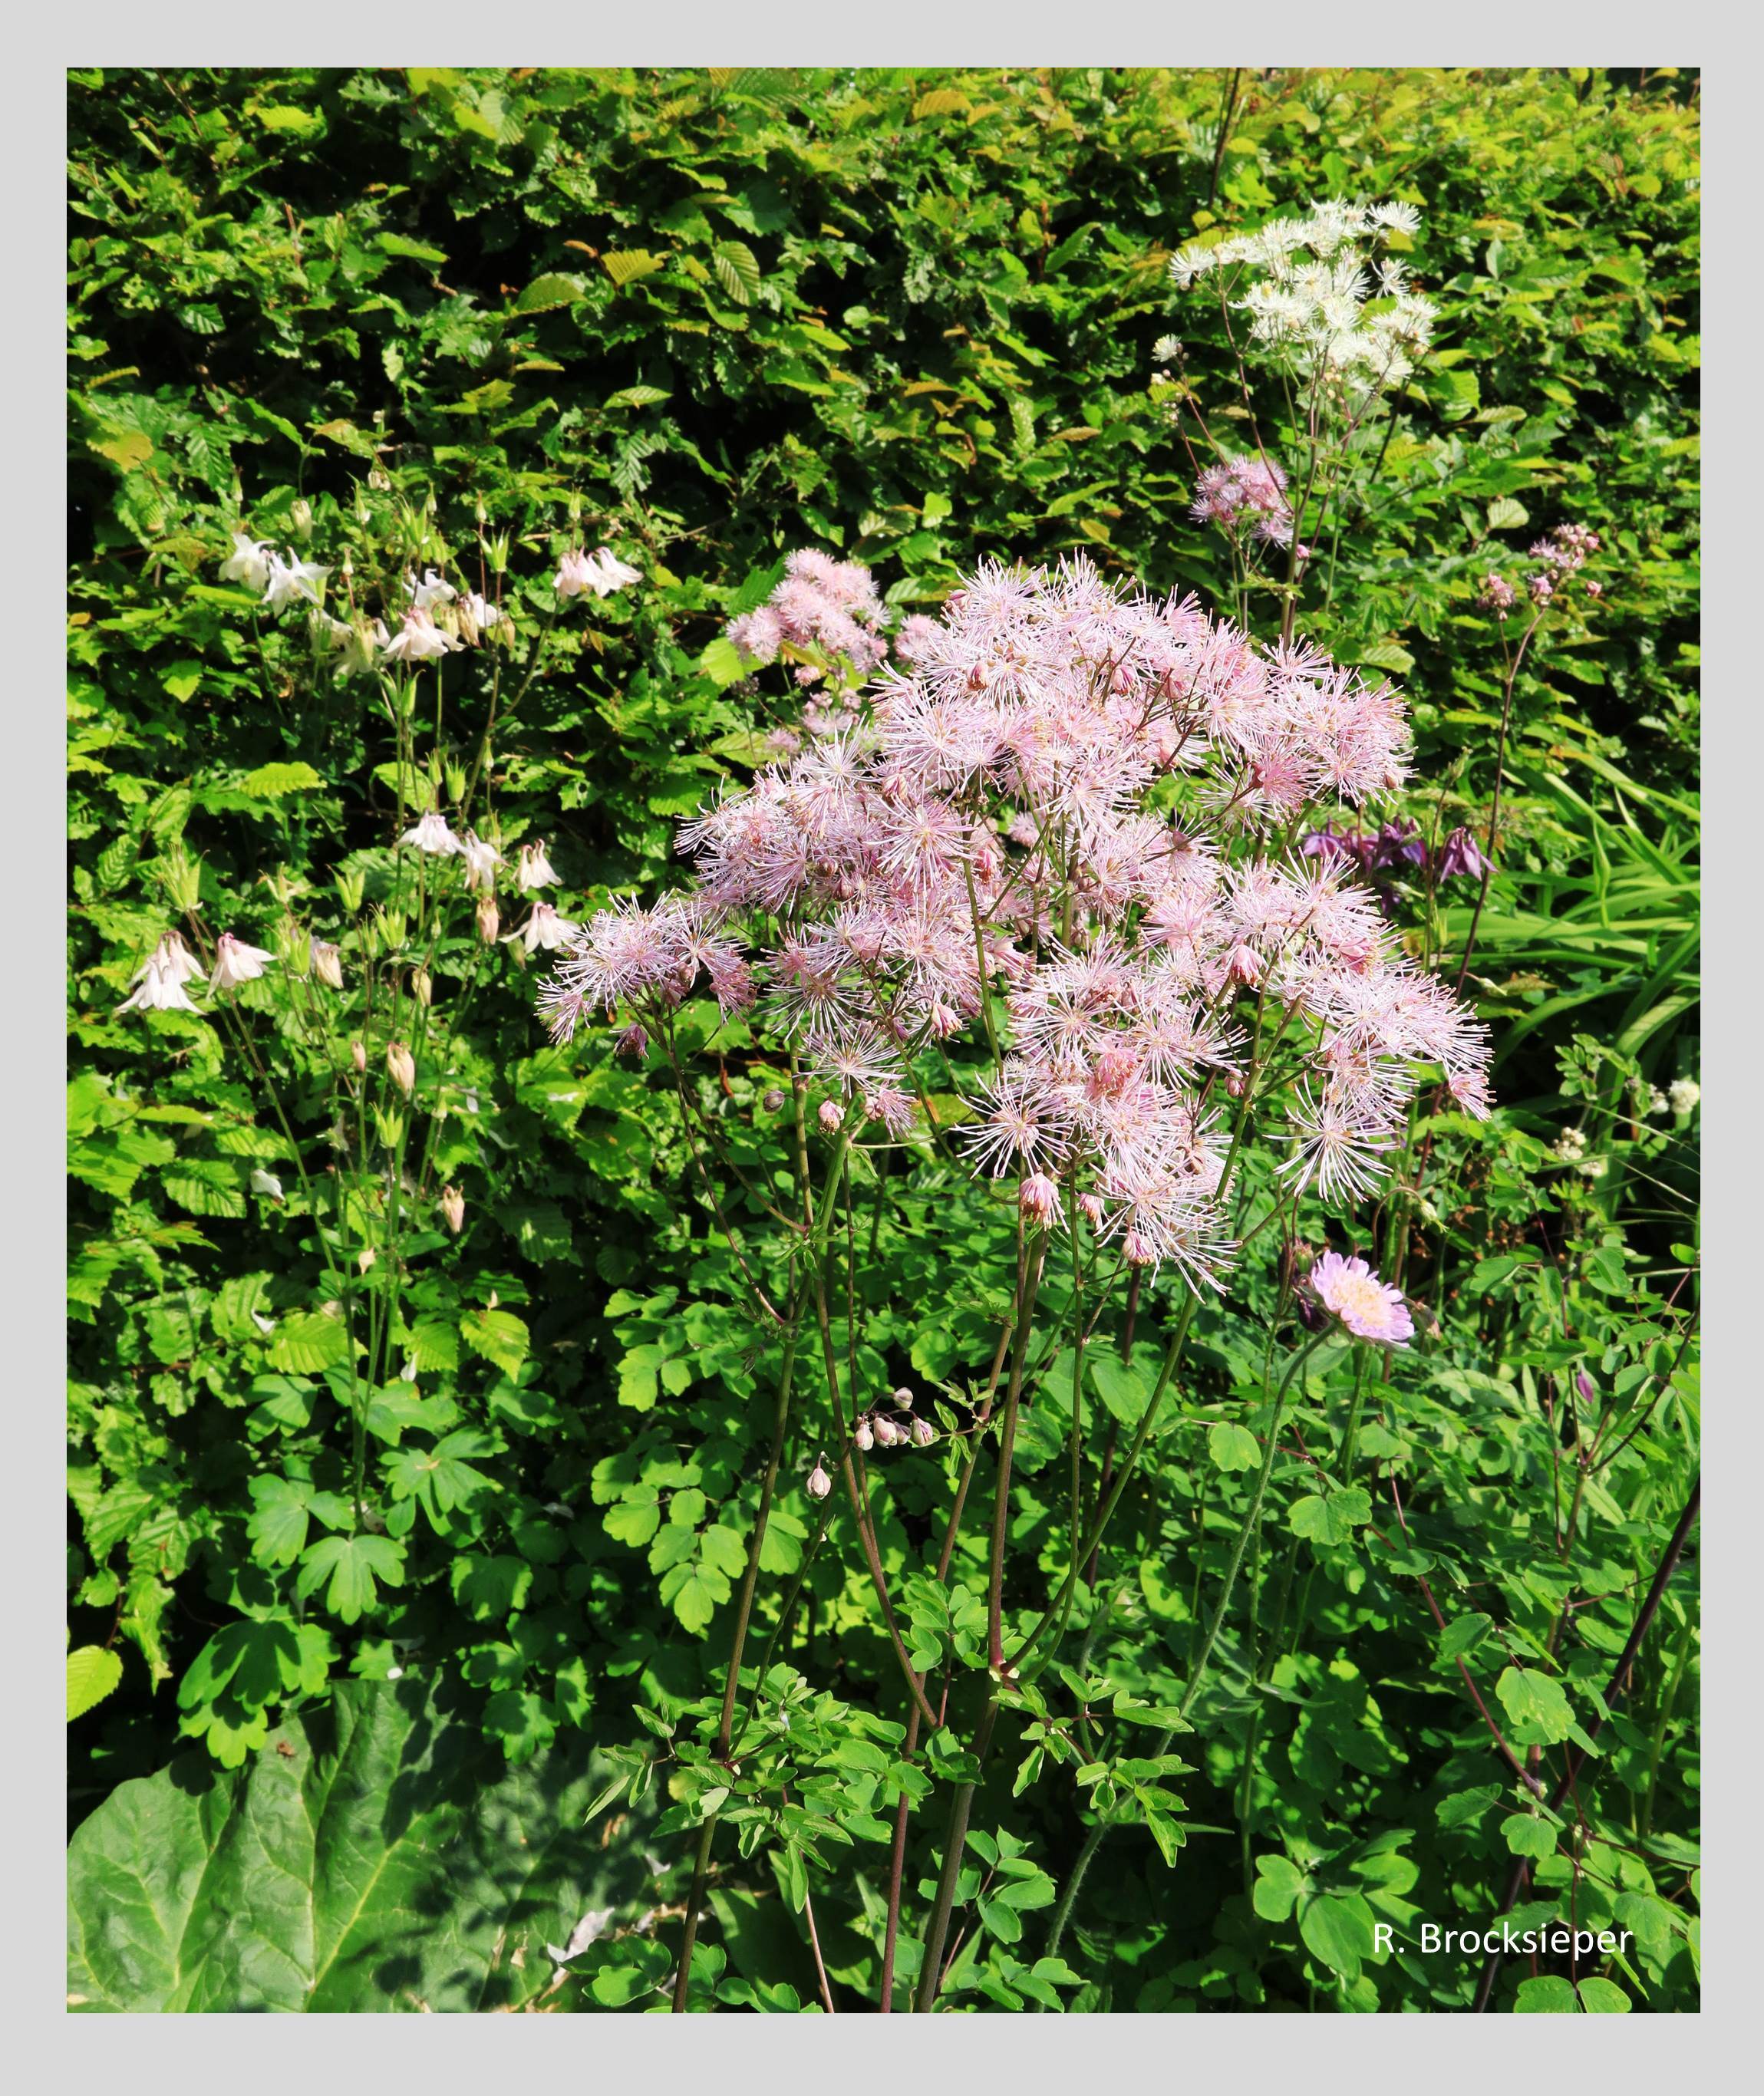 Die Wiesenraute (Thalictrum flavum) wird bis zu 1 m hoch, blüht Juni bis August und zieht Bienen, Schmetterlinge sowie Pinselkäfer und Rosenkäfer an , die an den rosafarbenen Staubblättern fressen. Die filigrane Blüte wirkt besonders gut vor einem ruhigen Hintergrund.